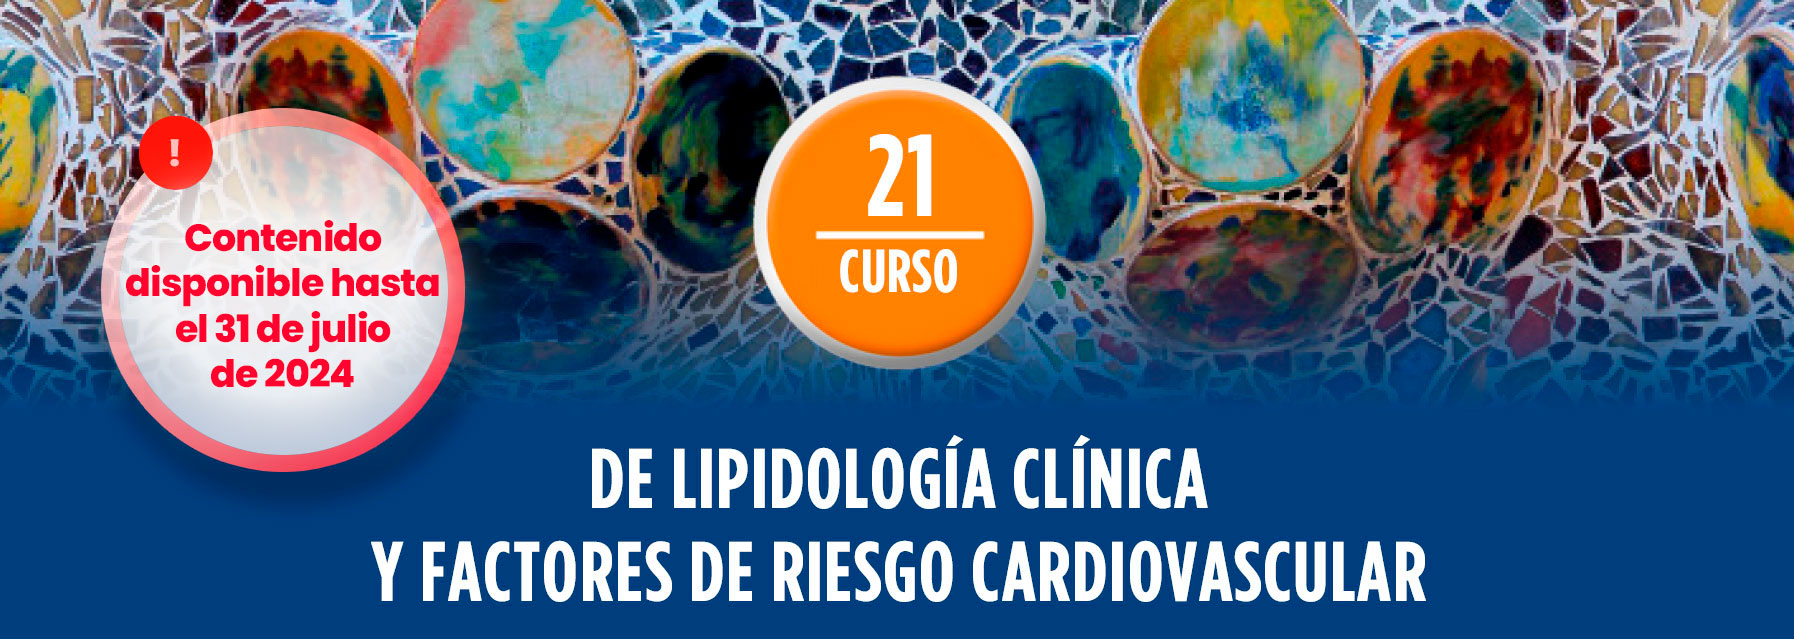 21º Curso de Lipidología Clínica y Factores de Riesgo Cardiovascular